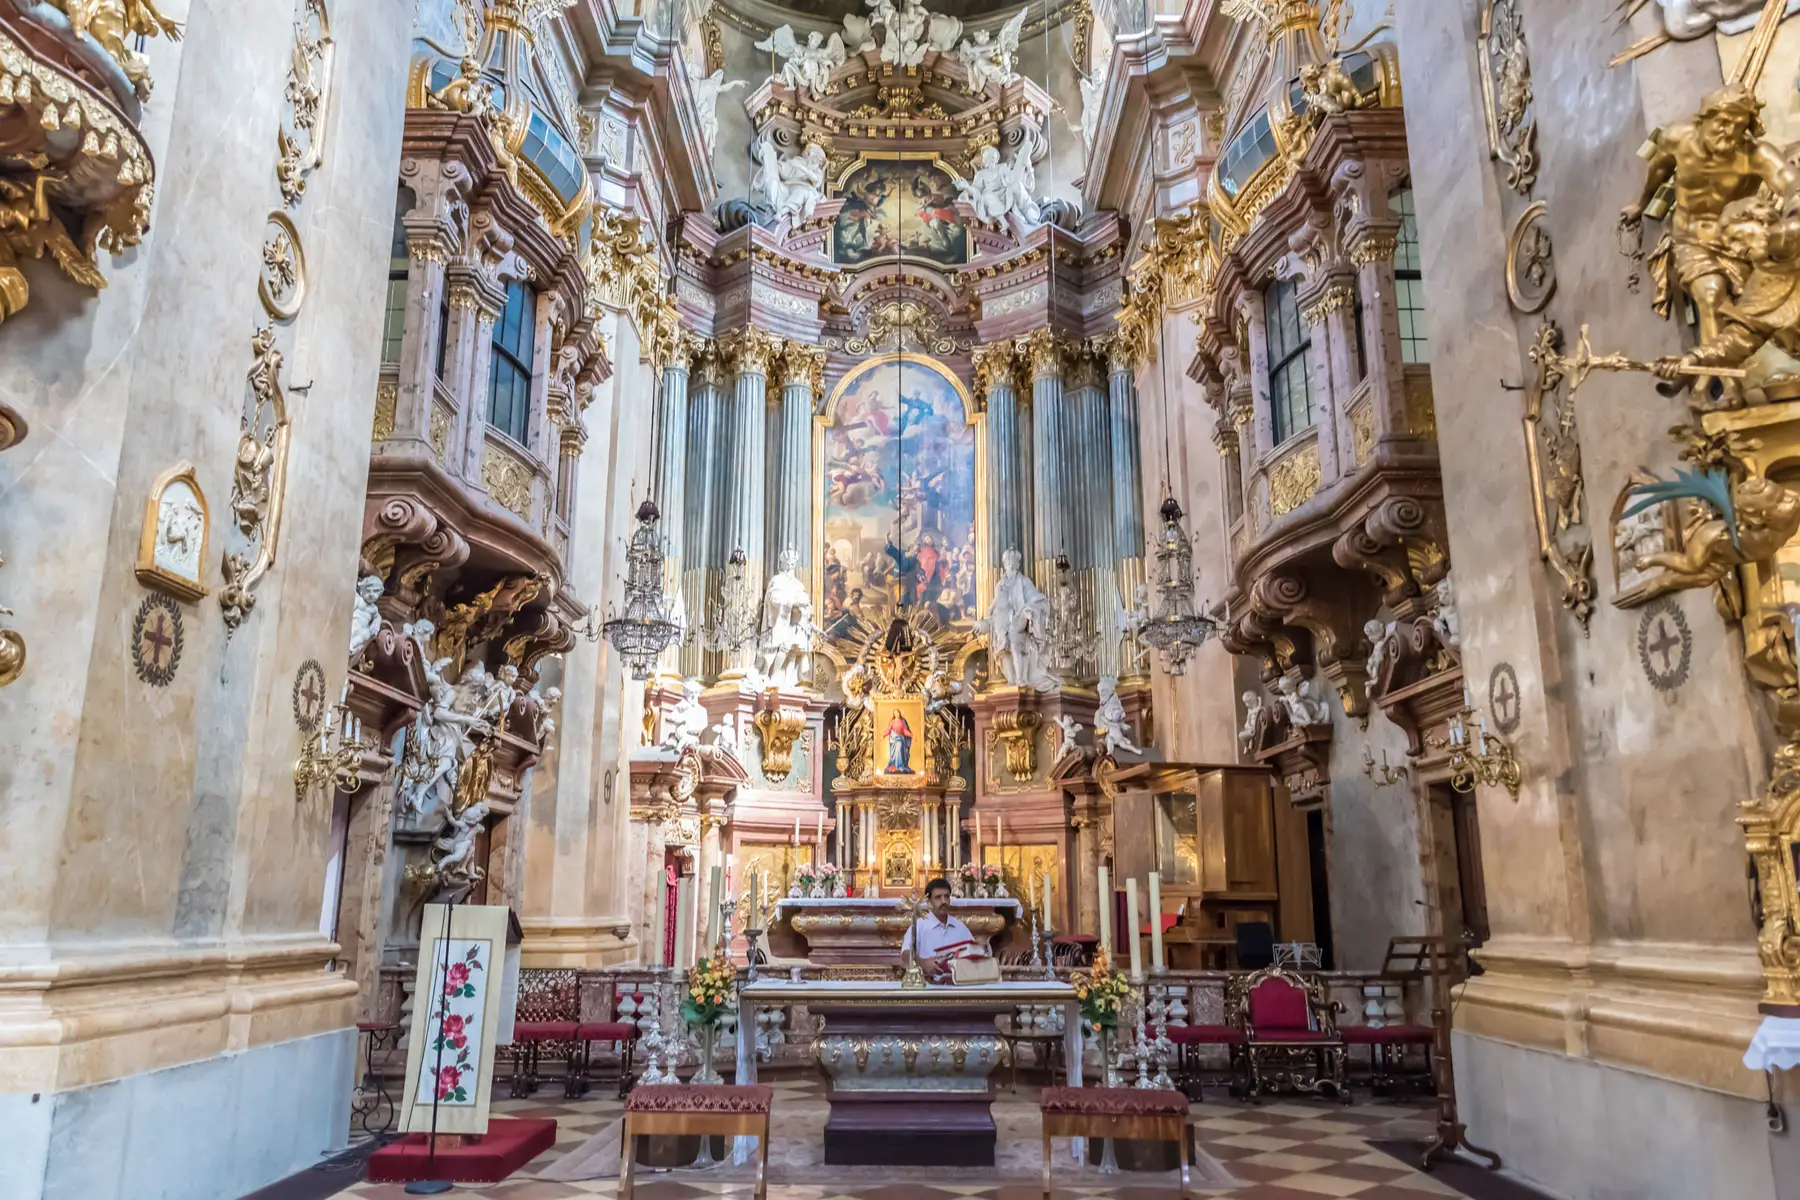 St. Peter's Church in Vienna